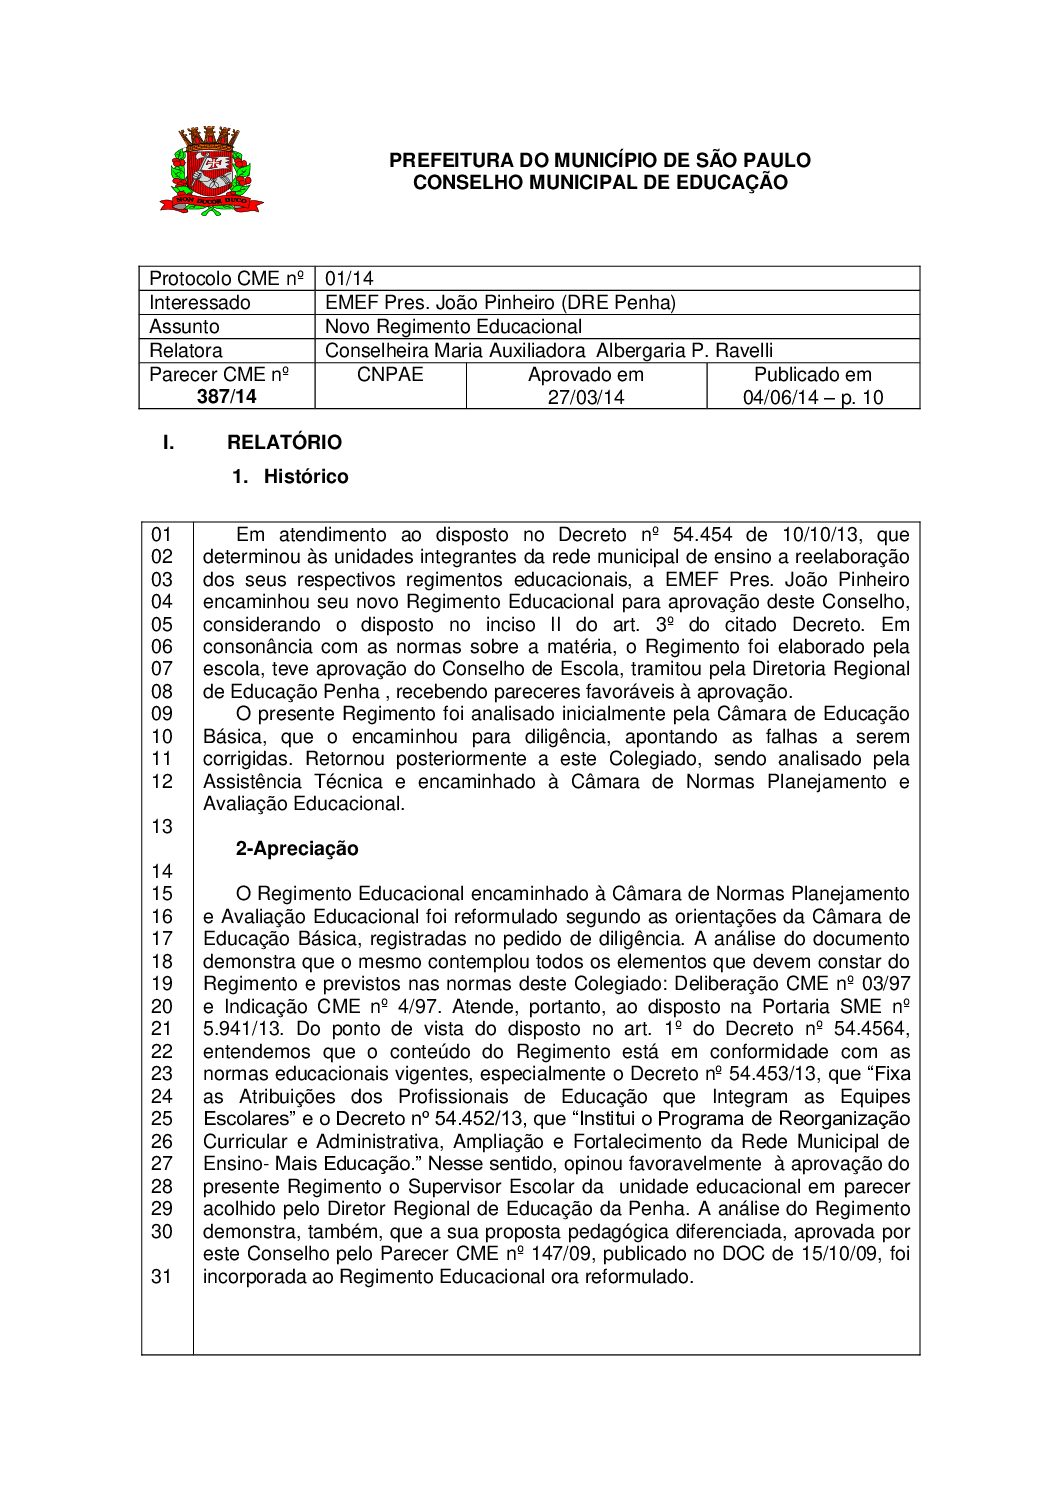 Parecer CME nº 387/2014 - EMEF Pres. João Pinheiro (DRE Penha) - Novo Regimento Educacional